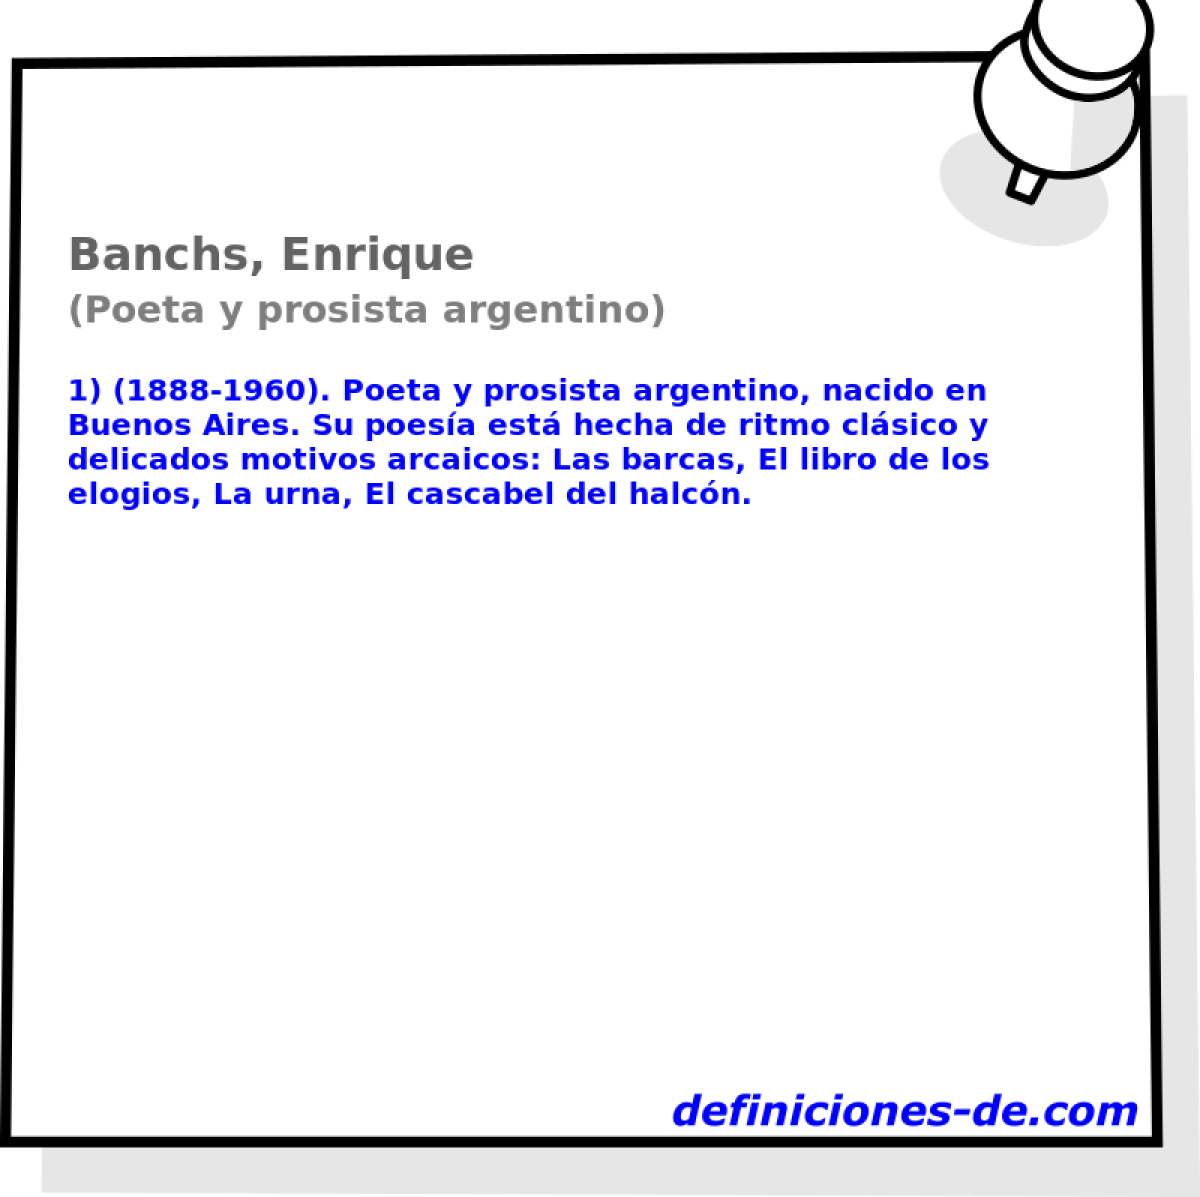 Banchs, Enrique (Poeta y prosista argentino)